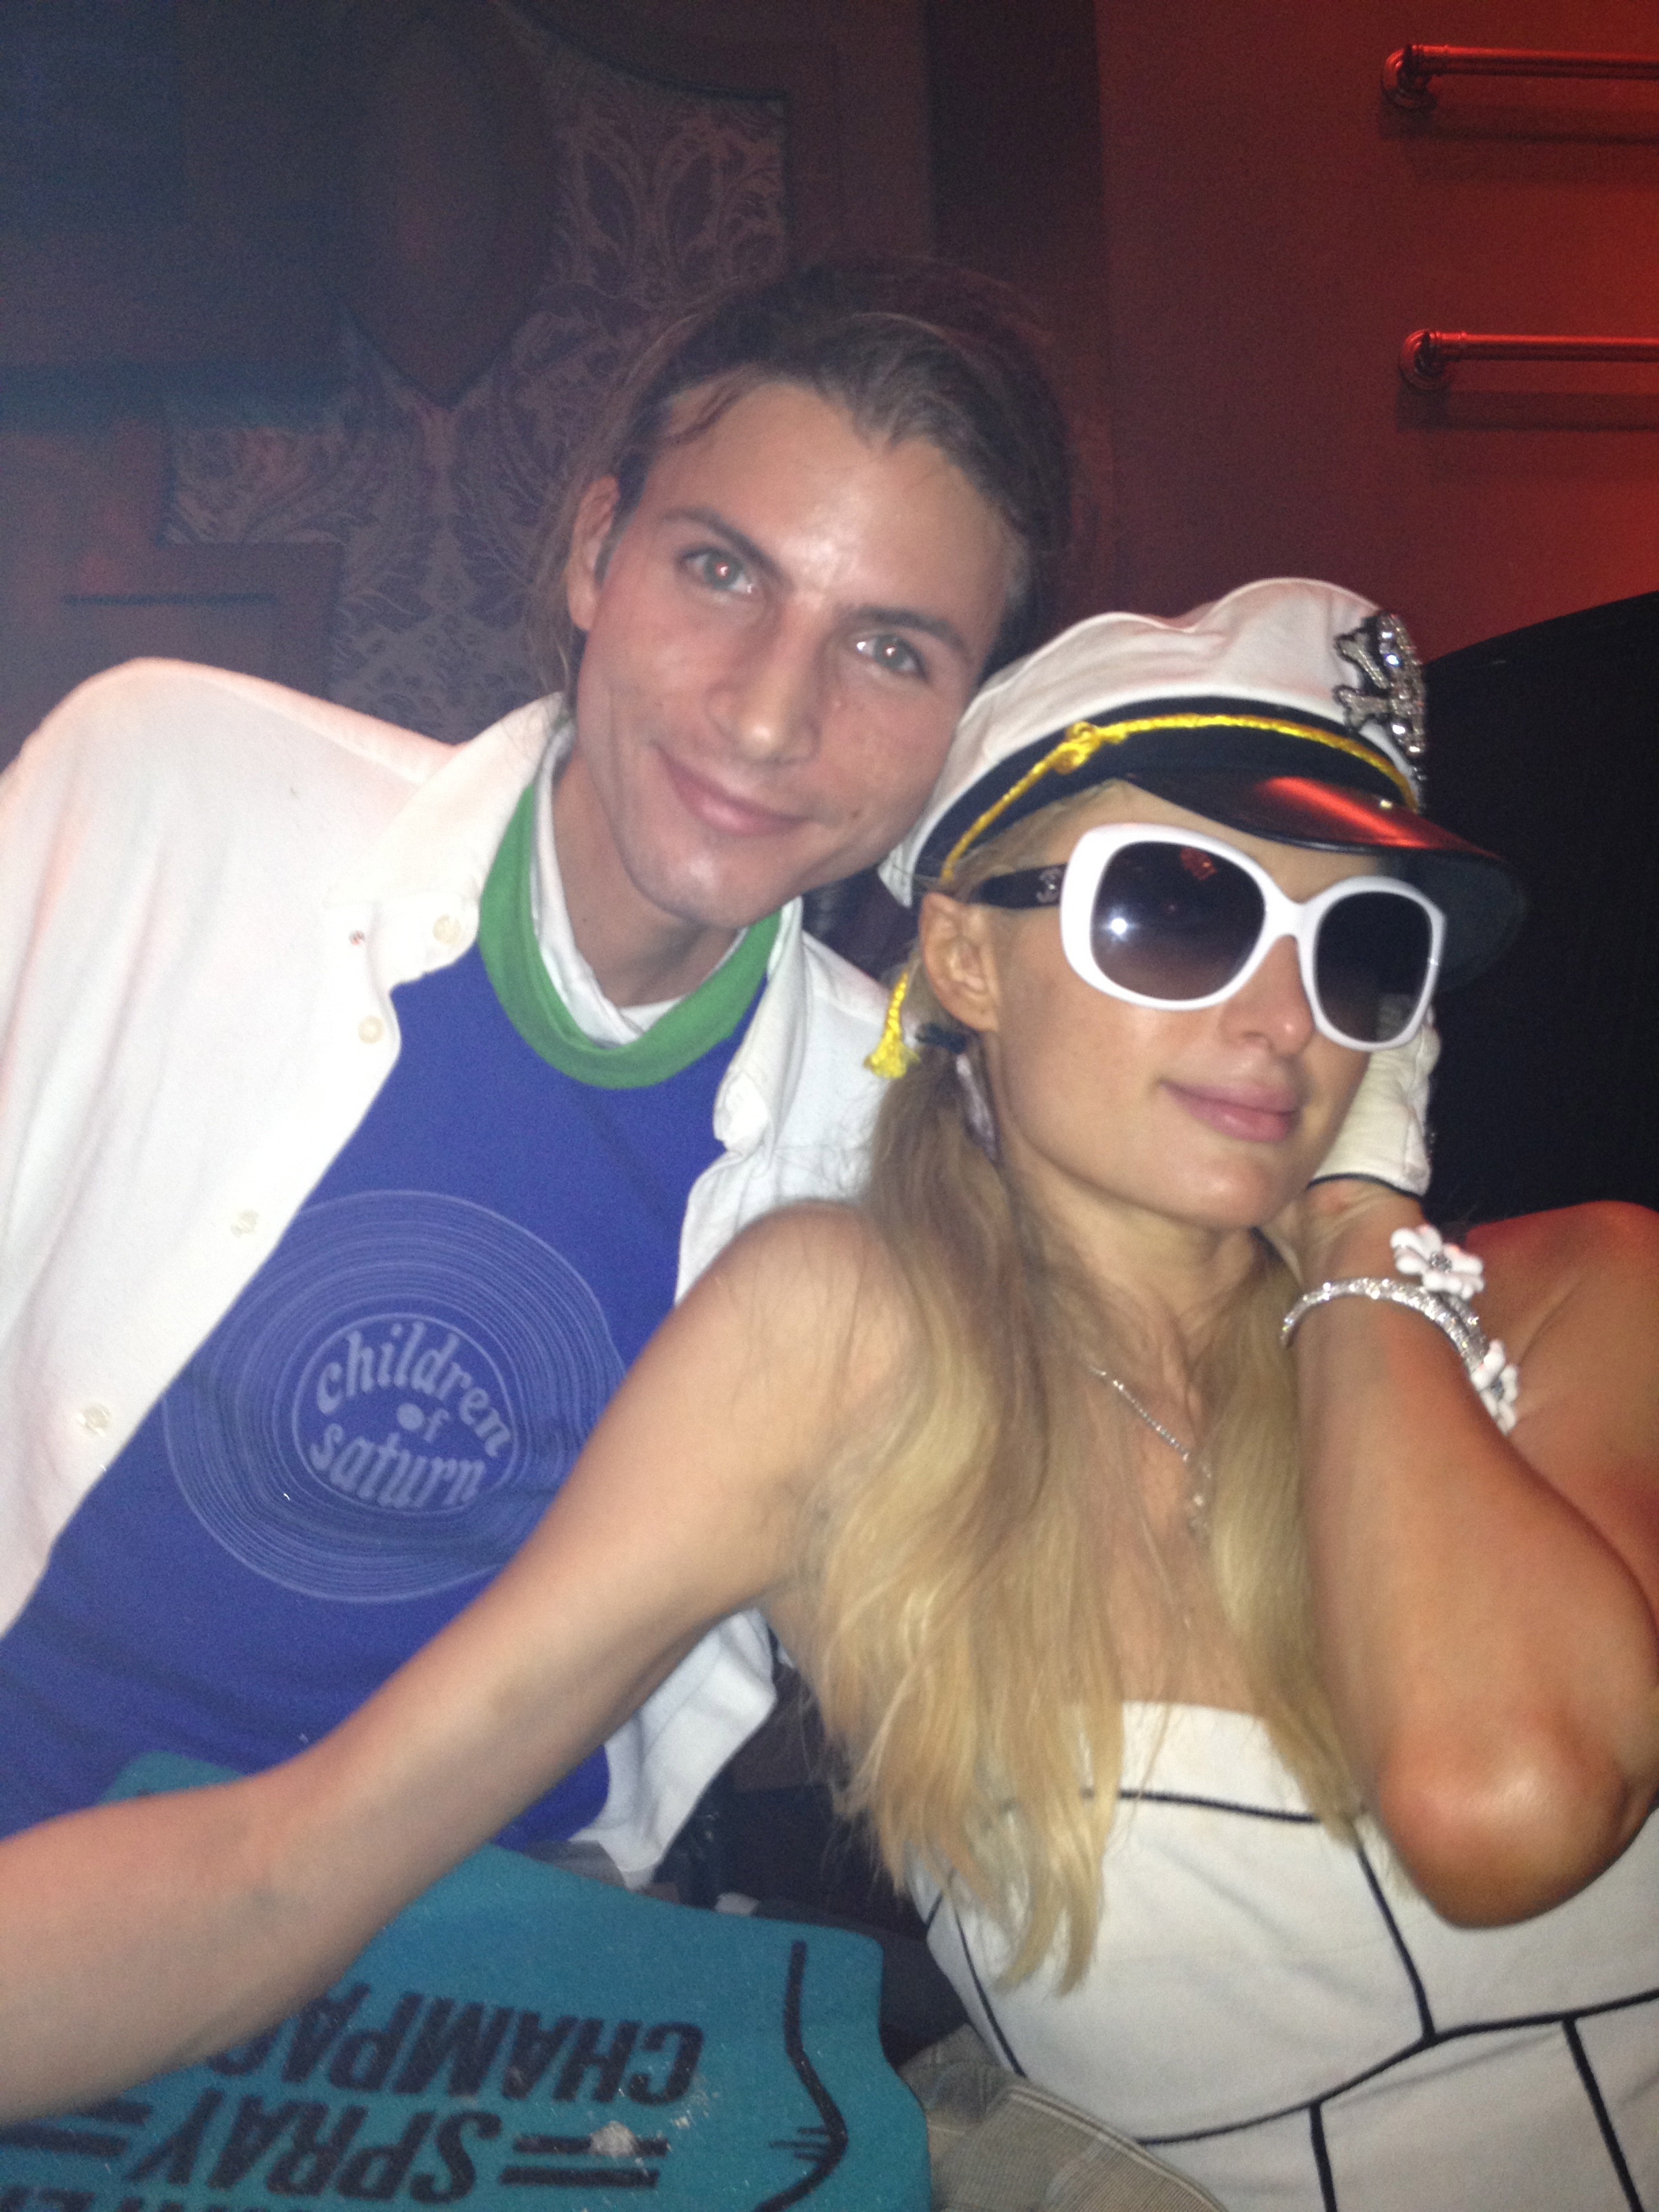 Paris Hilton and I